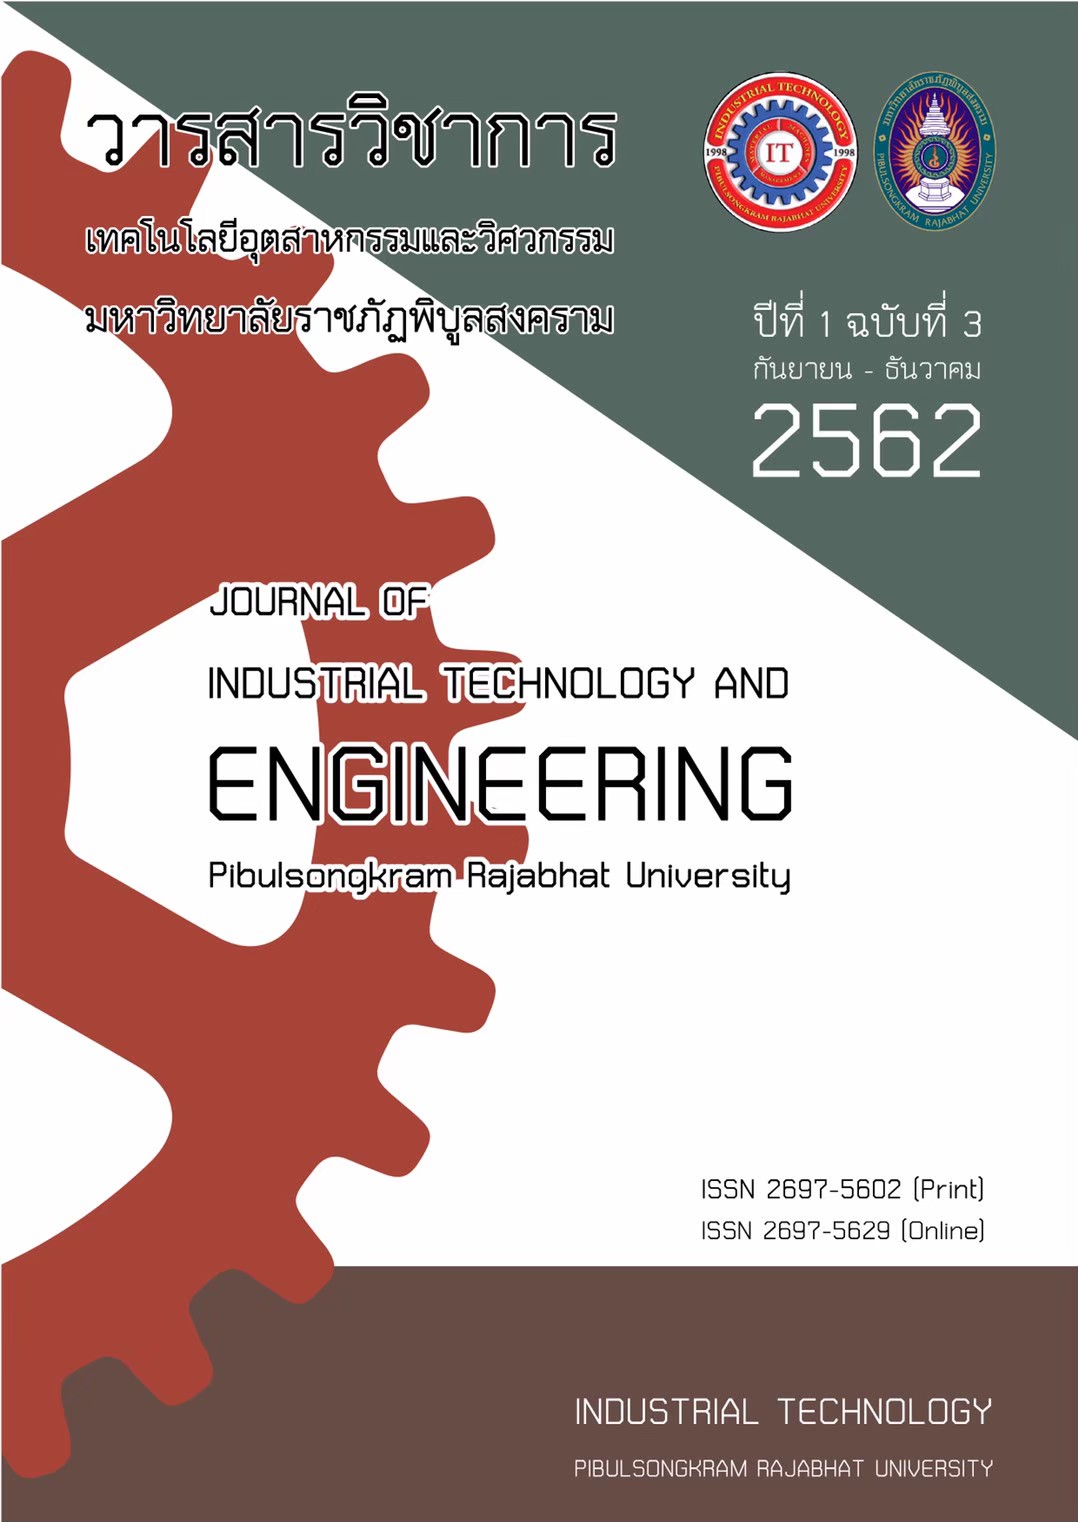 					ดู ปีที่ 1 ฉบับที่ 3 (2019): September 2019 - December 2019 (PSRU Journal of Industrial Technology and Engineering)
				